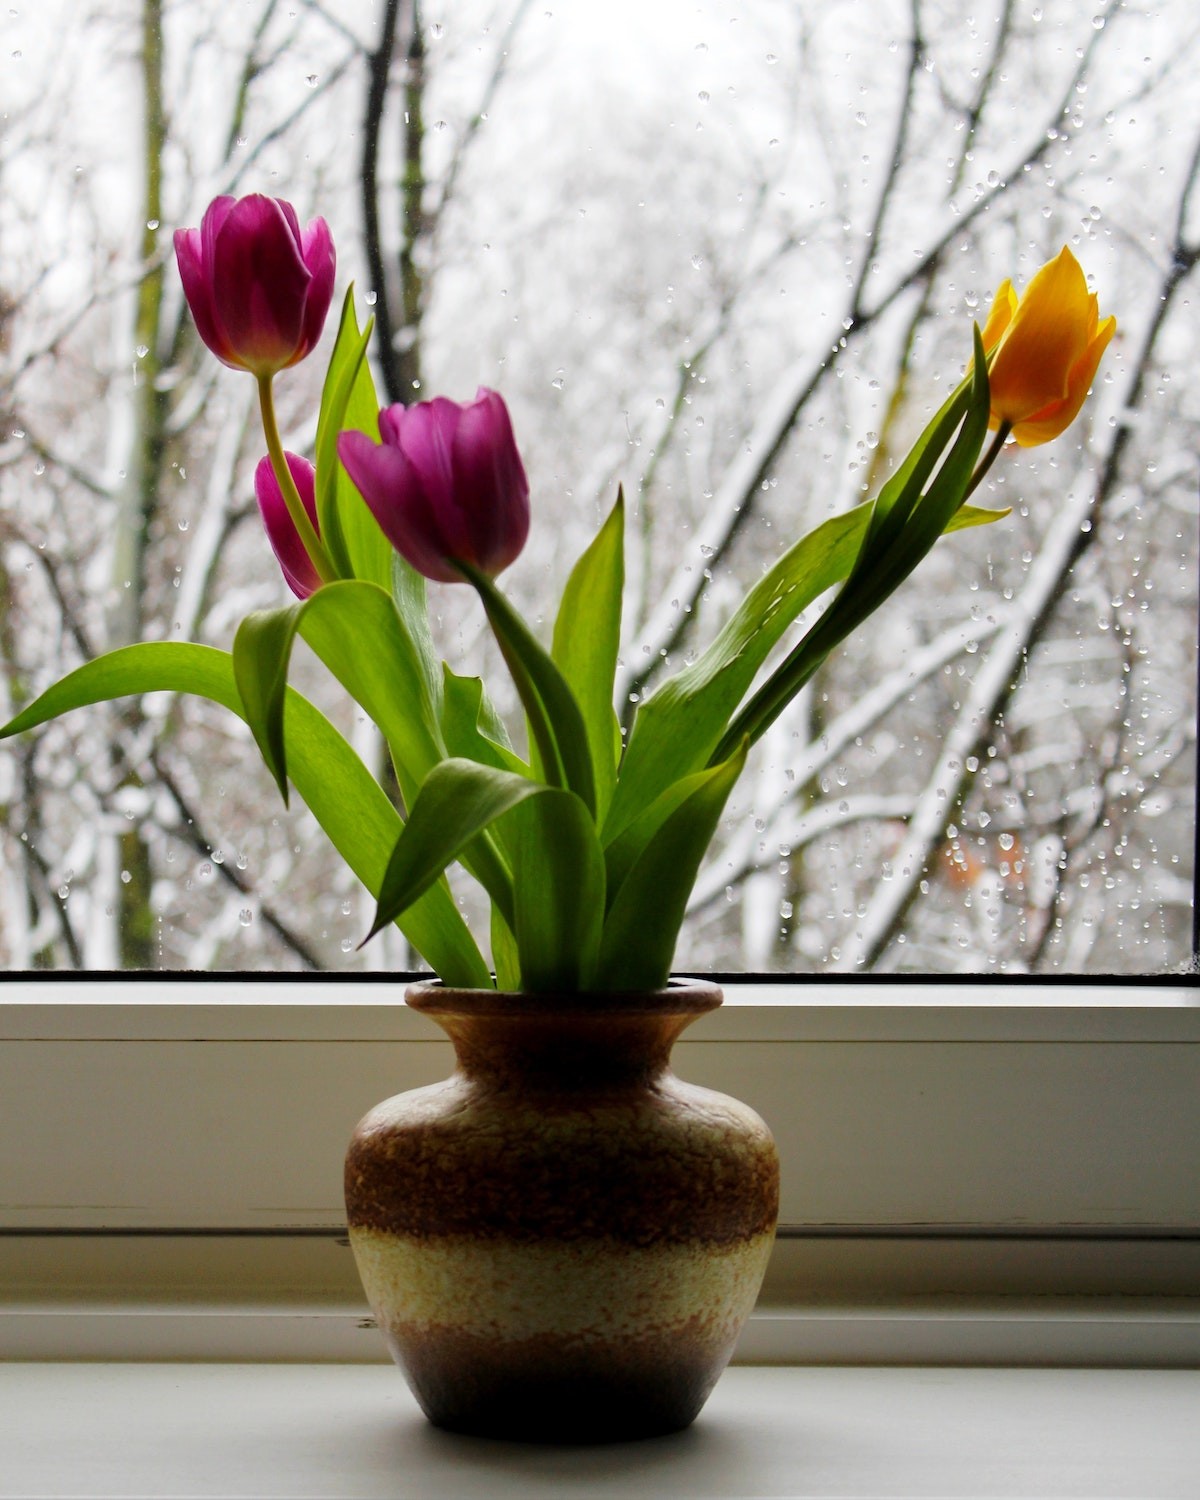 Originárias da Turquia, as tulipas se deram muito bem na Holanda por ser uma flor de climas mais frios (Foto: Esalflores / Divulgação)